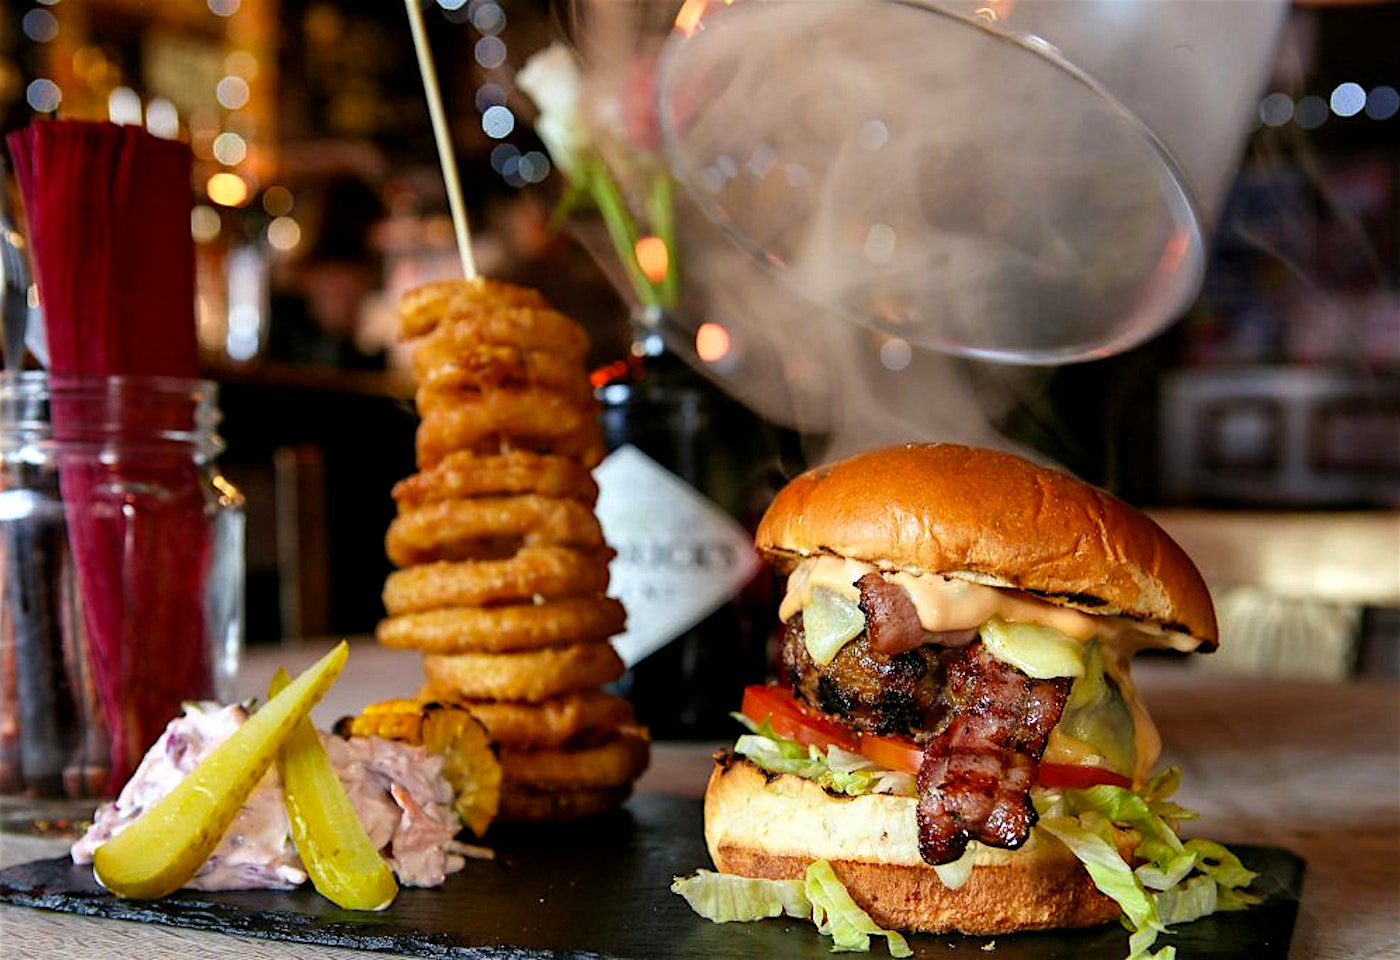 a smokin burger at the camden head camden bar in camden town london